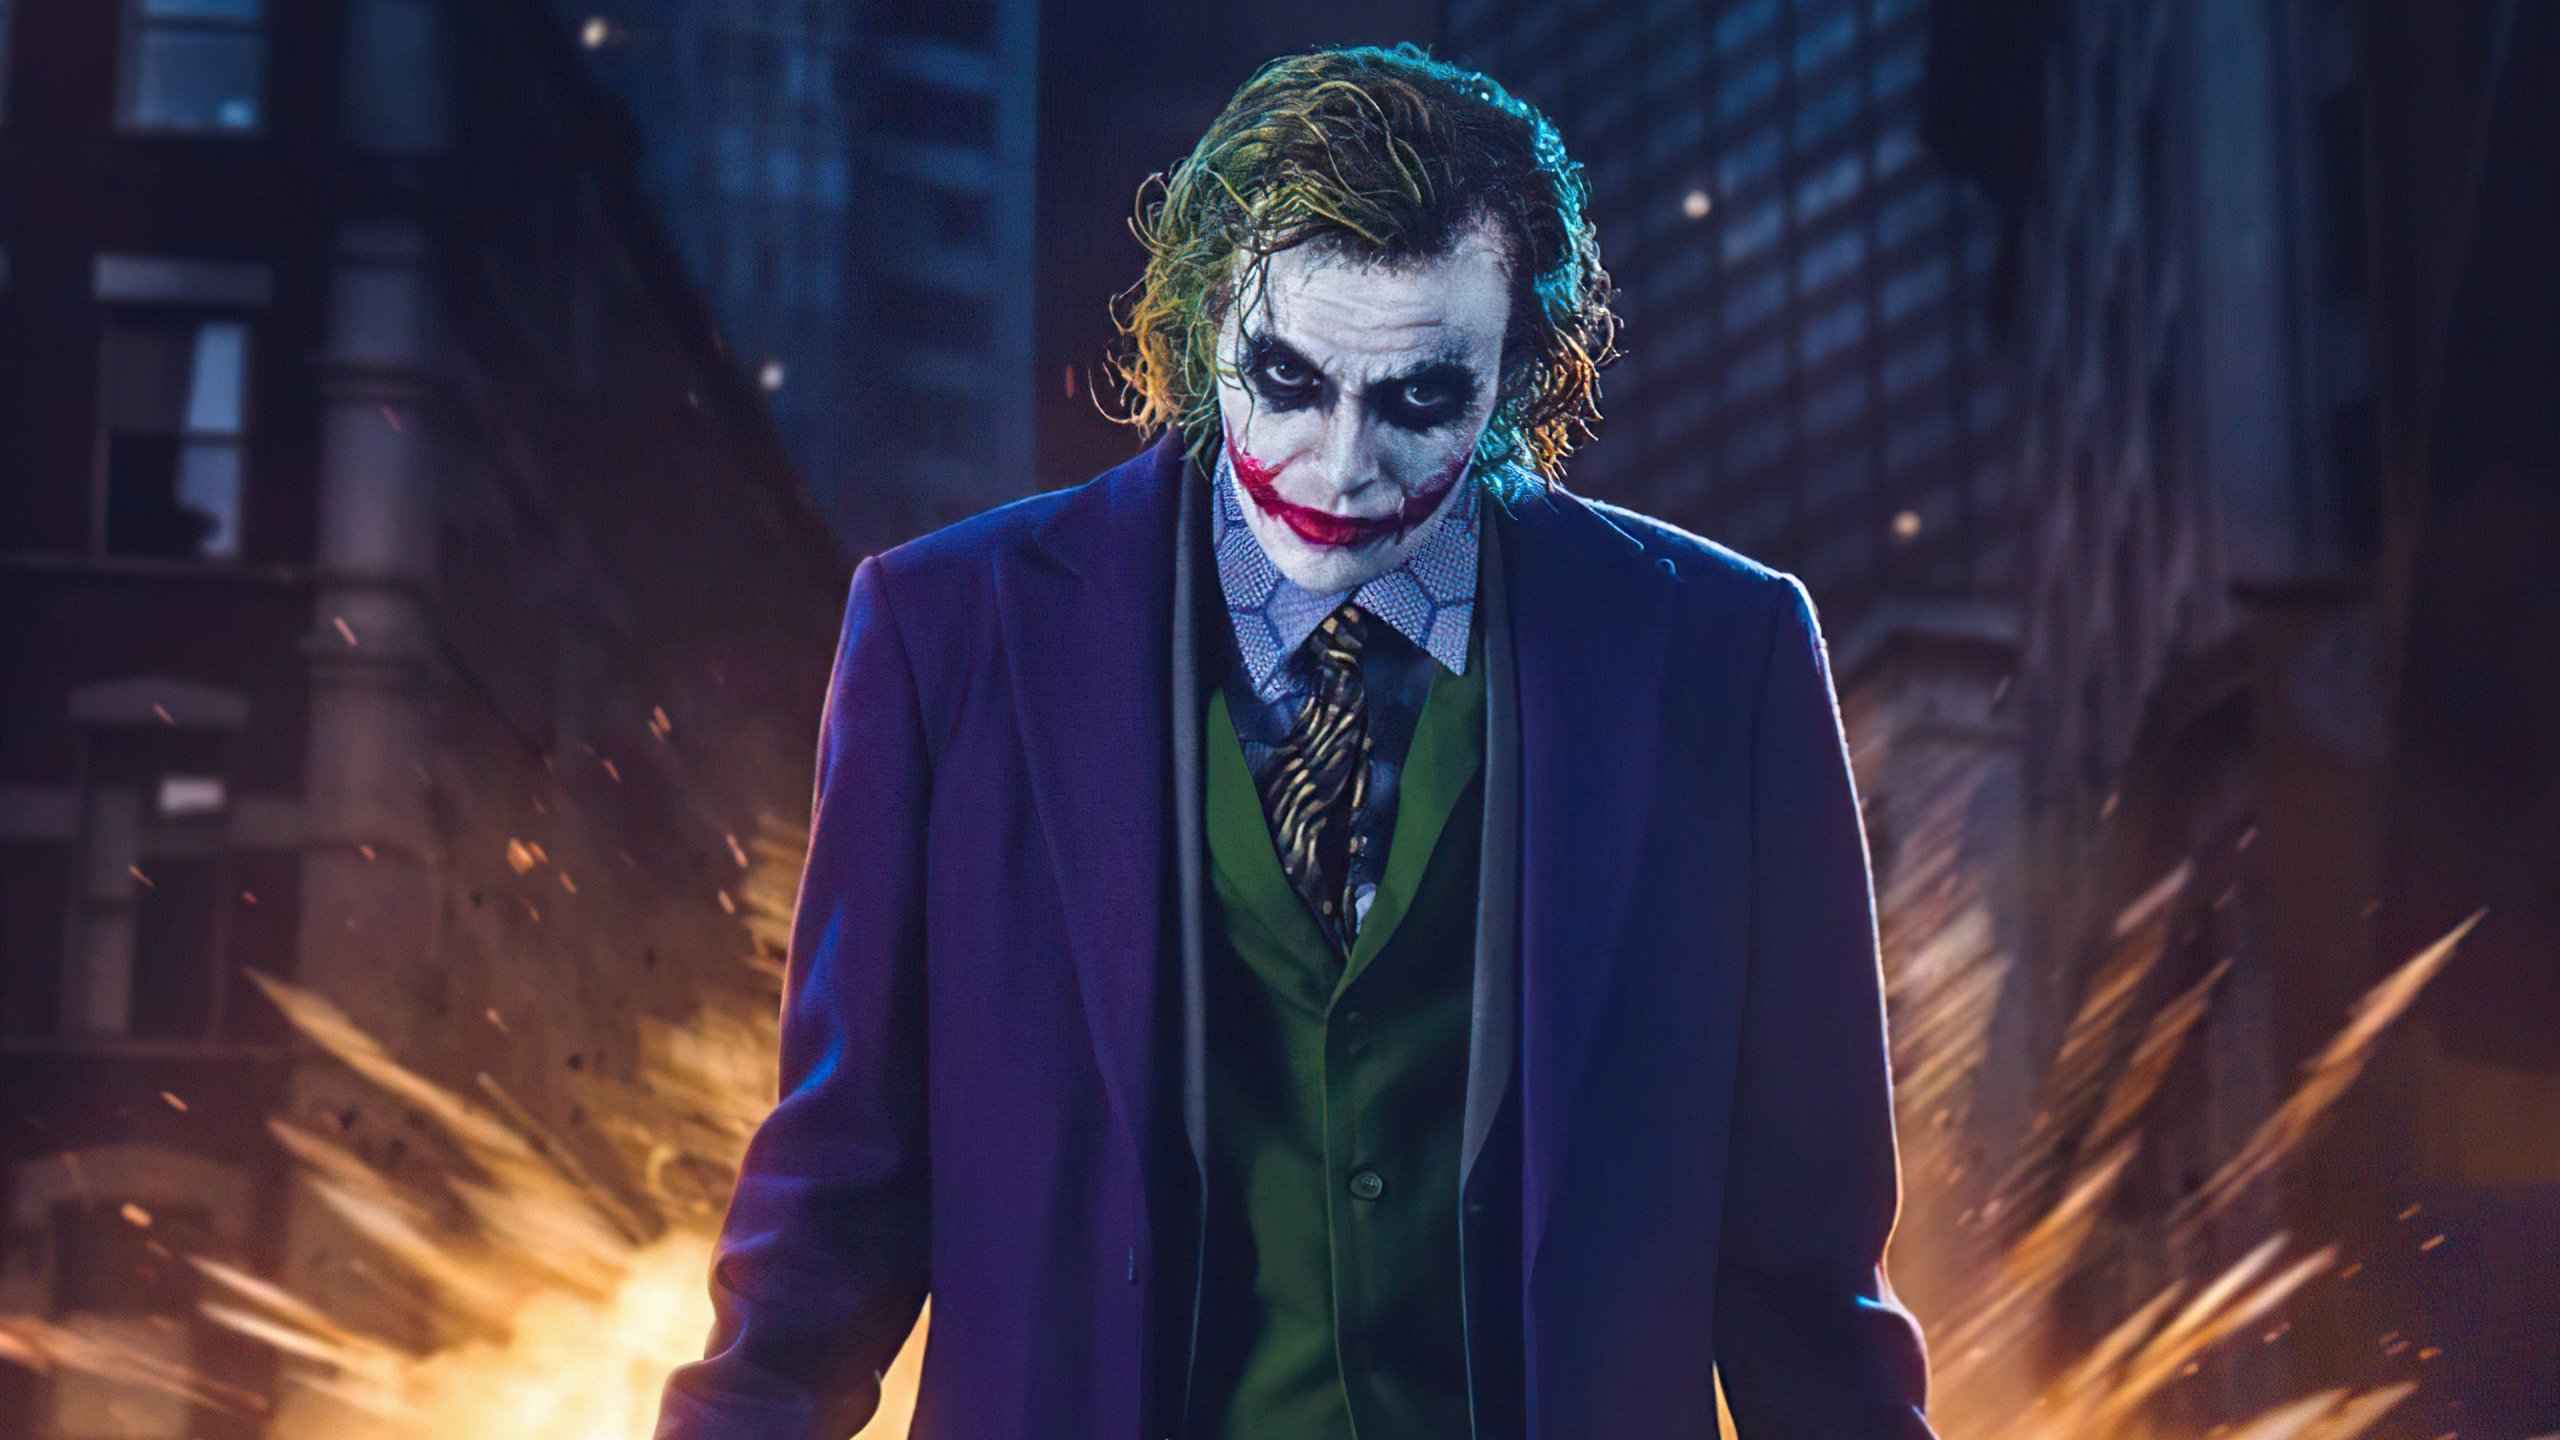 Heath Ledger as Joker Fanart Wallpaper 4k Ultra HD ID:7395